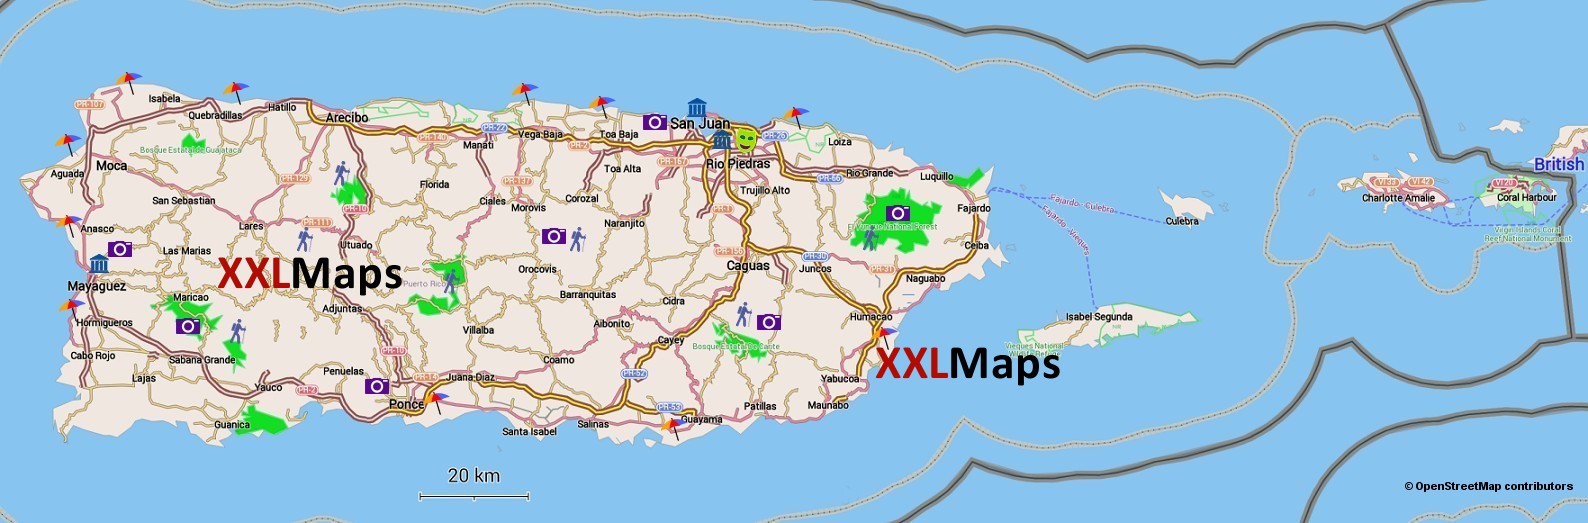 Mappa turistica di Porto Rico